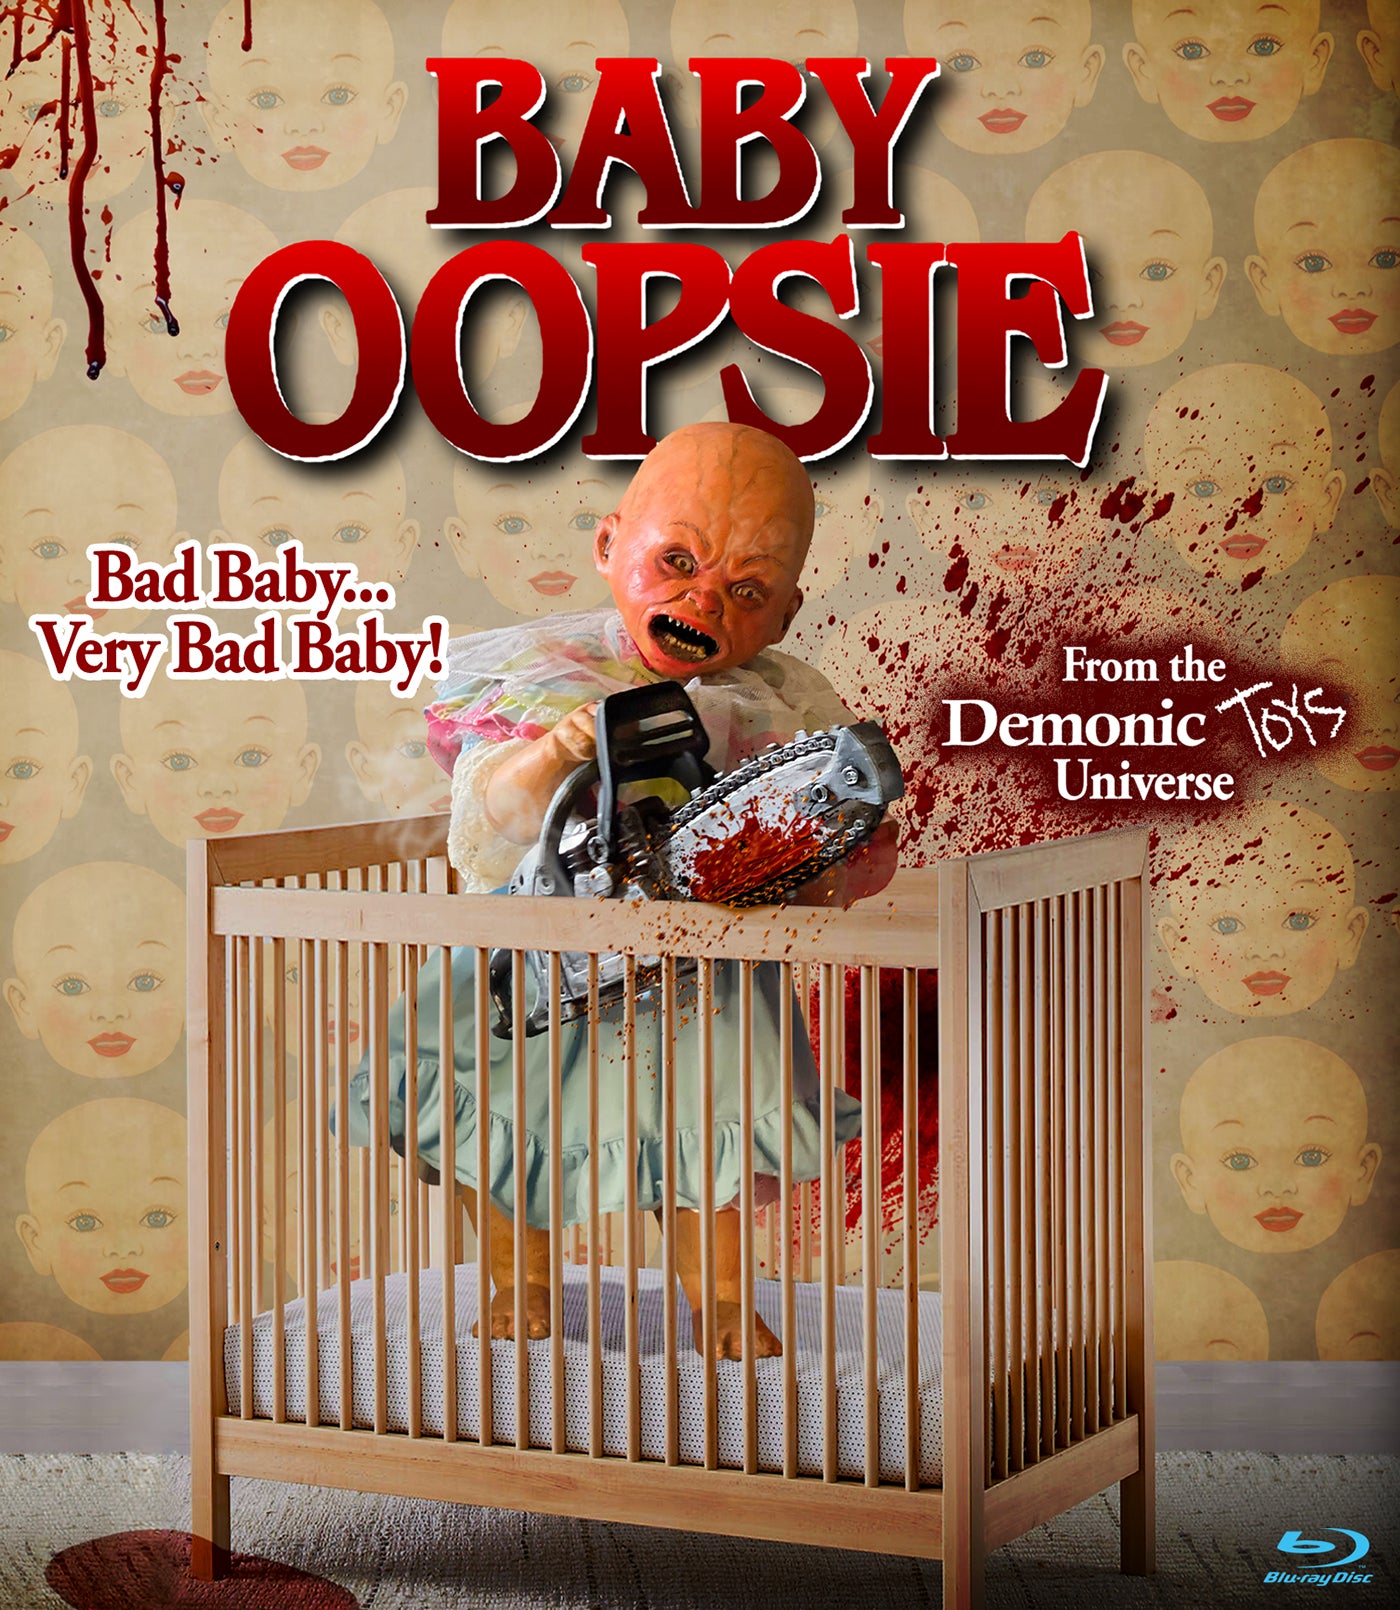 BABY OOPSIE BLU-RAY